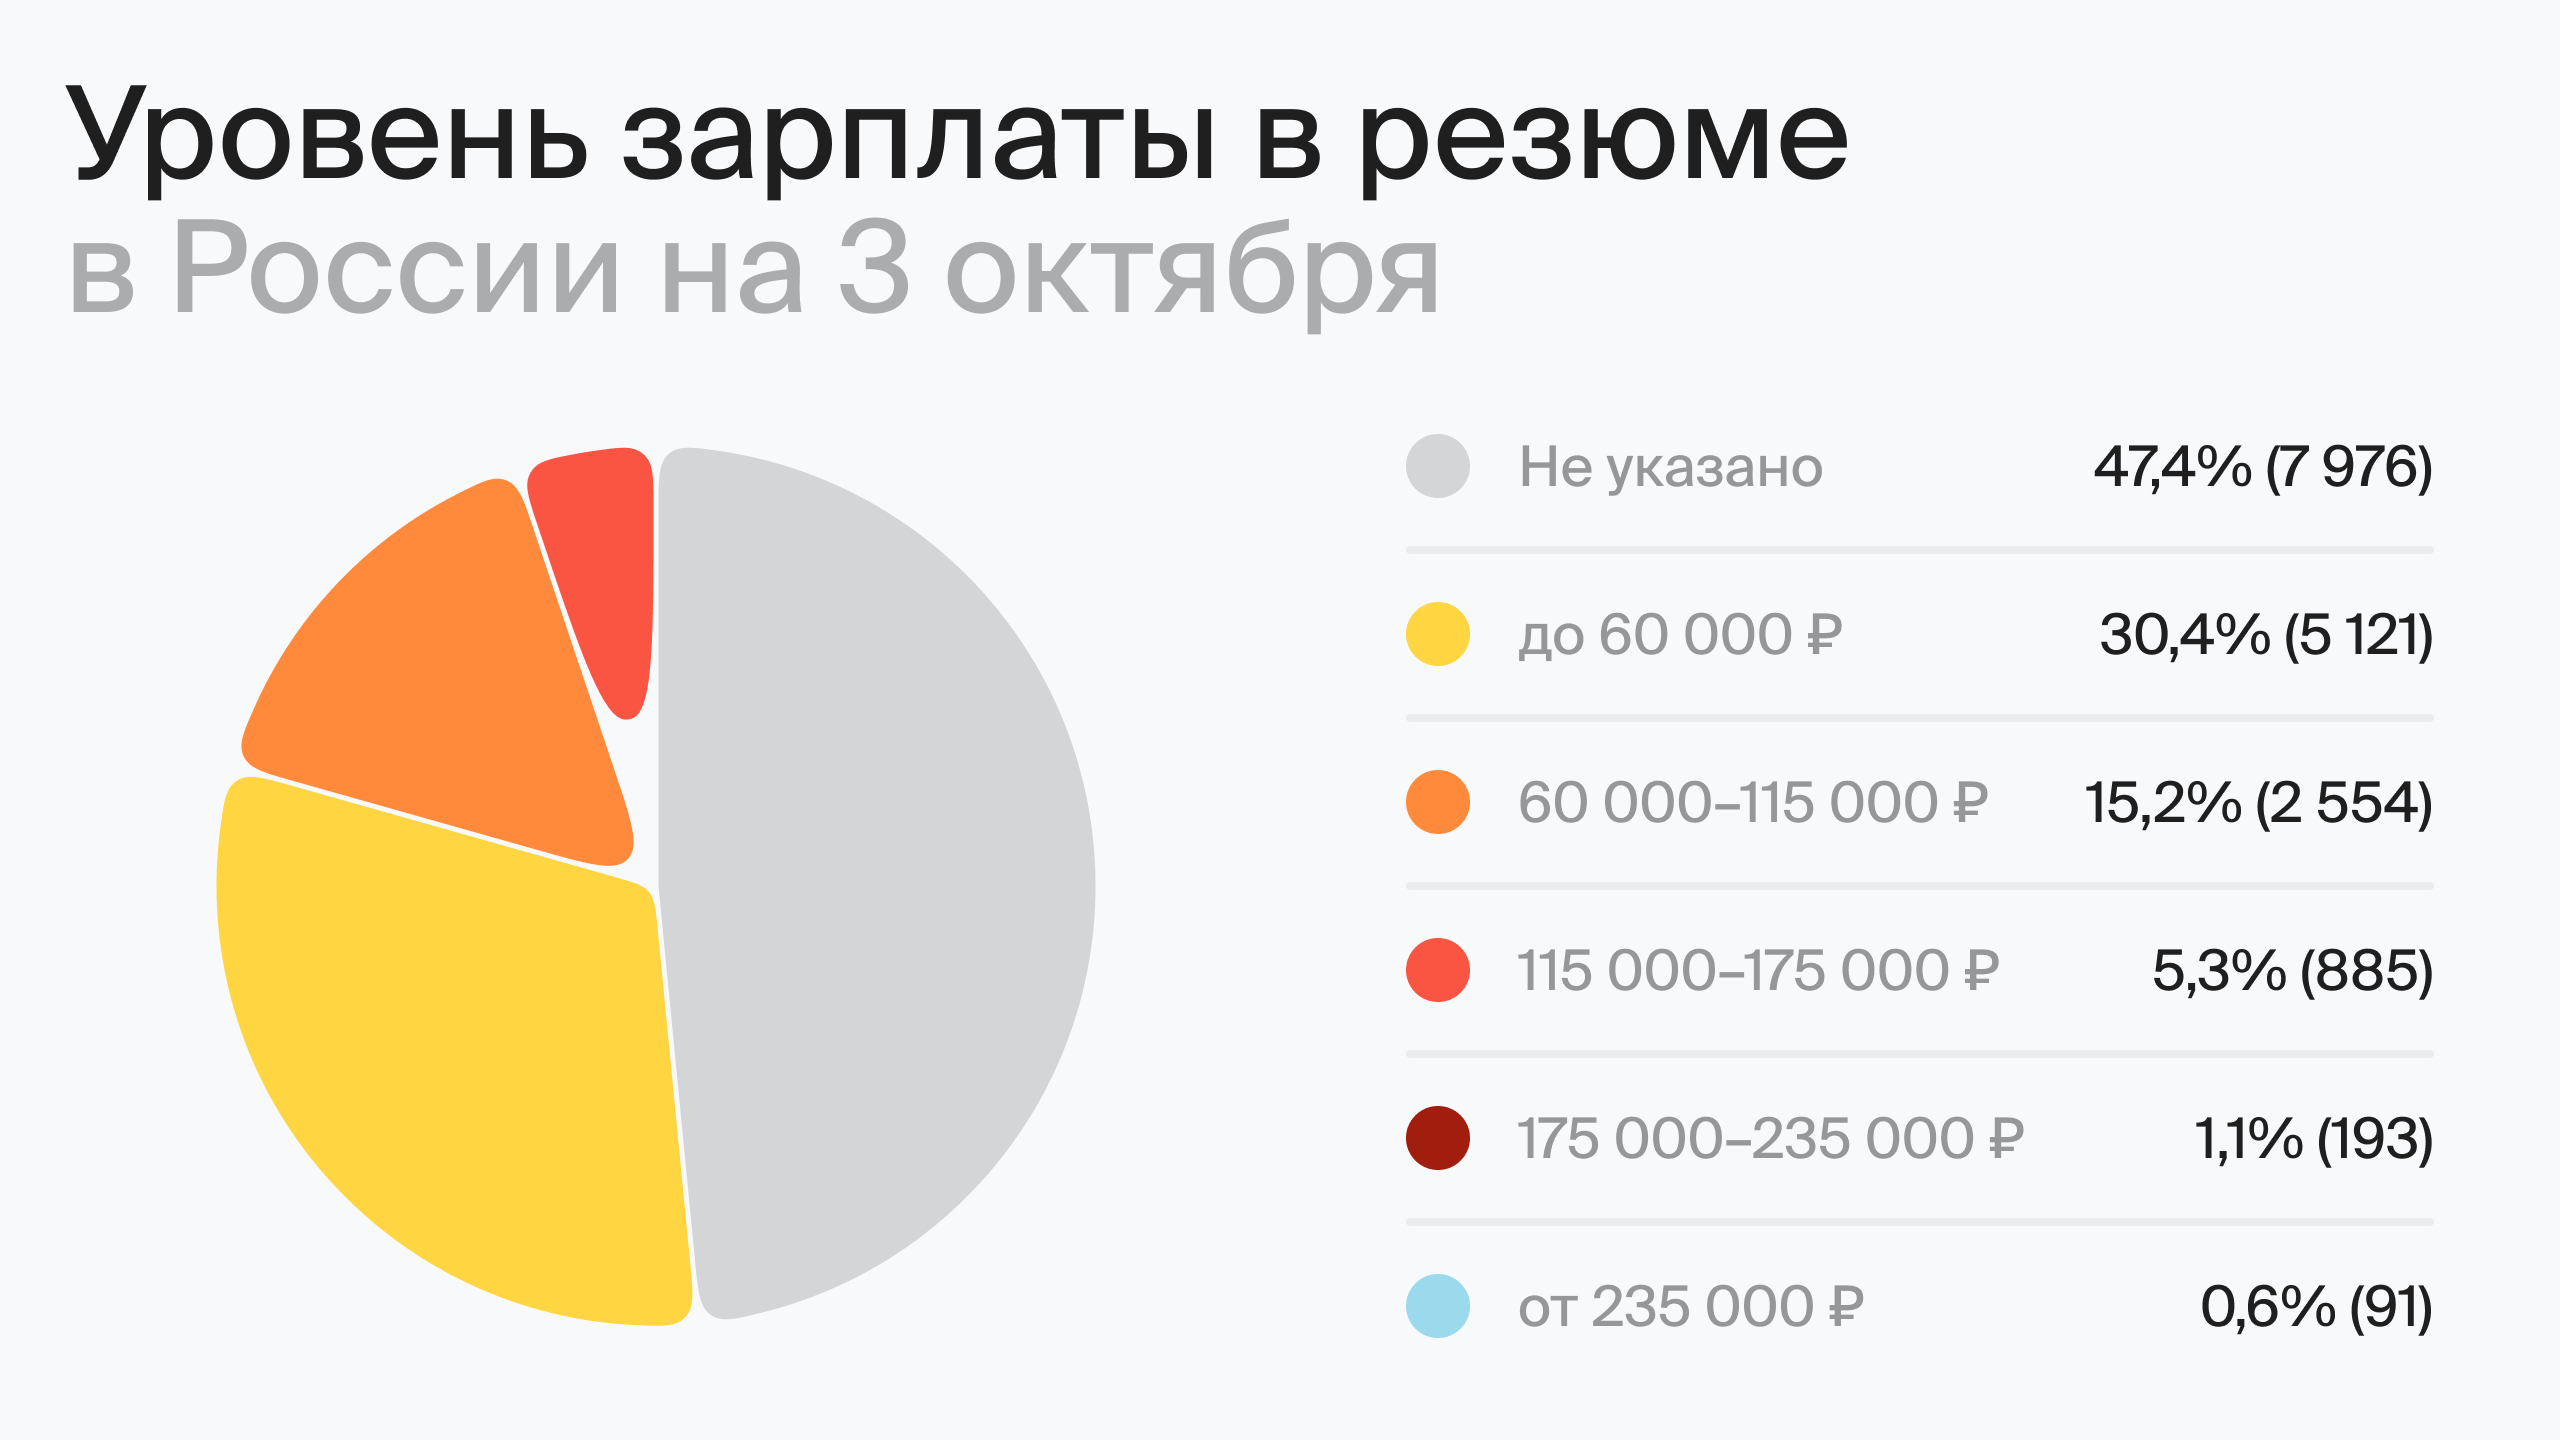 Уровень зарплаты в резюме в России на 3 октября (по данным hh.ru)